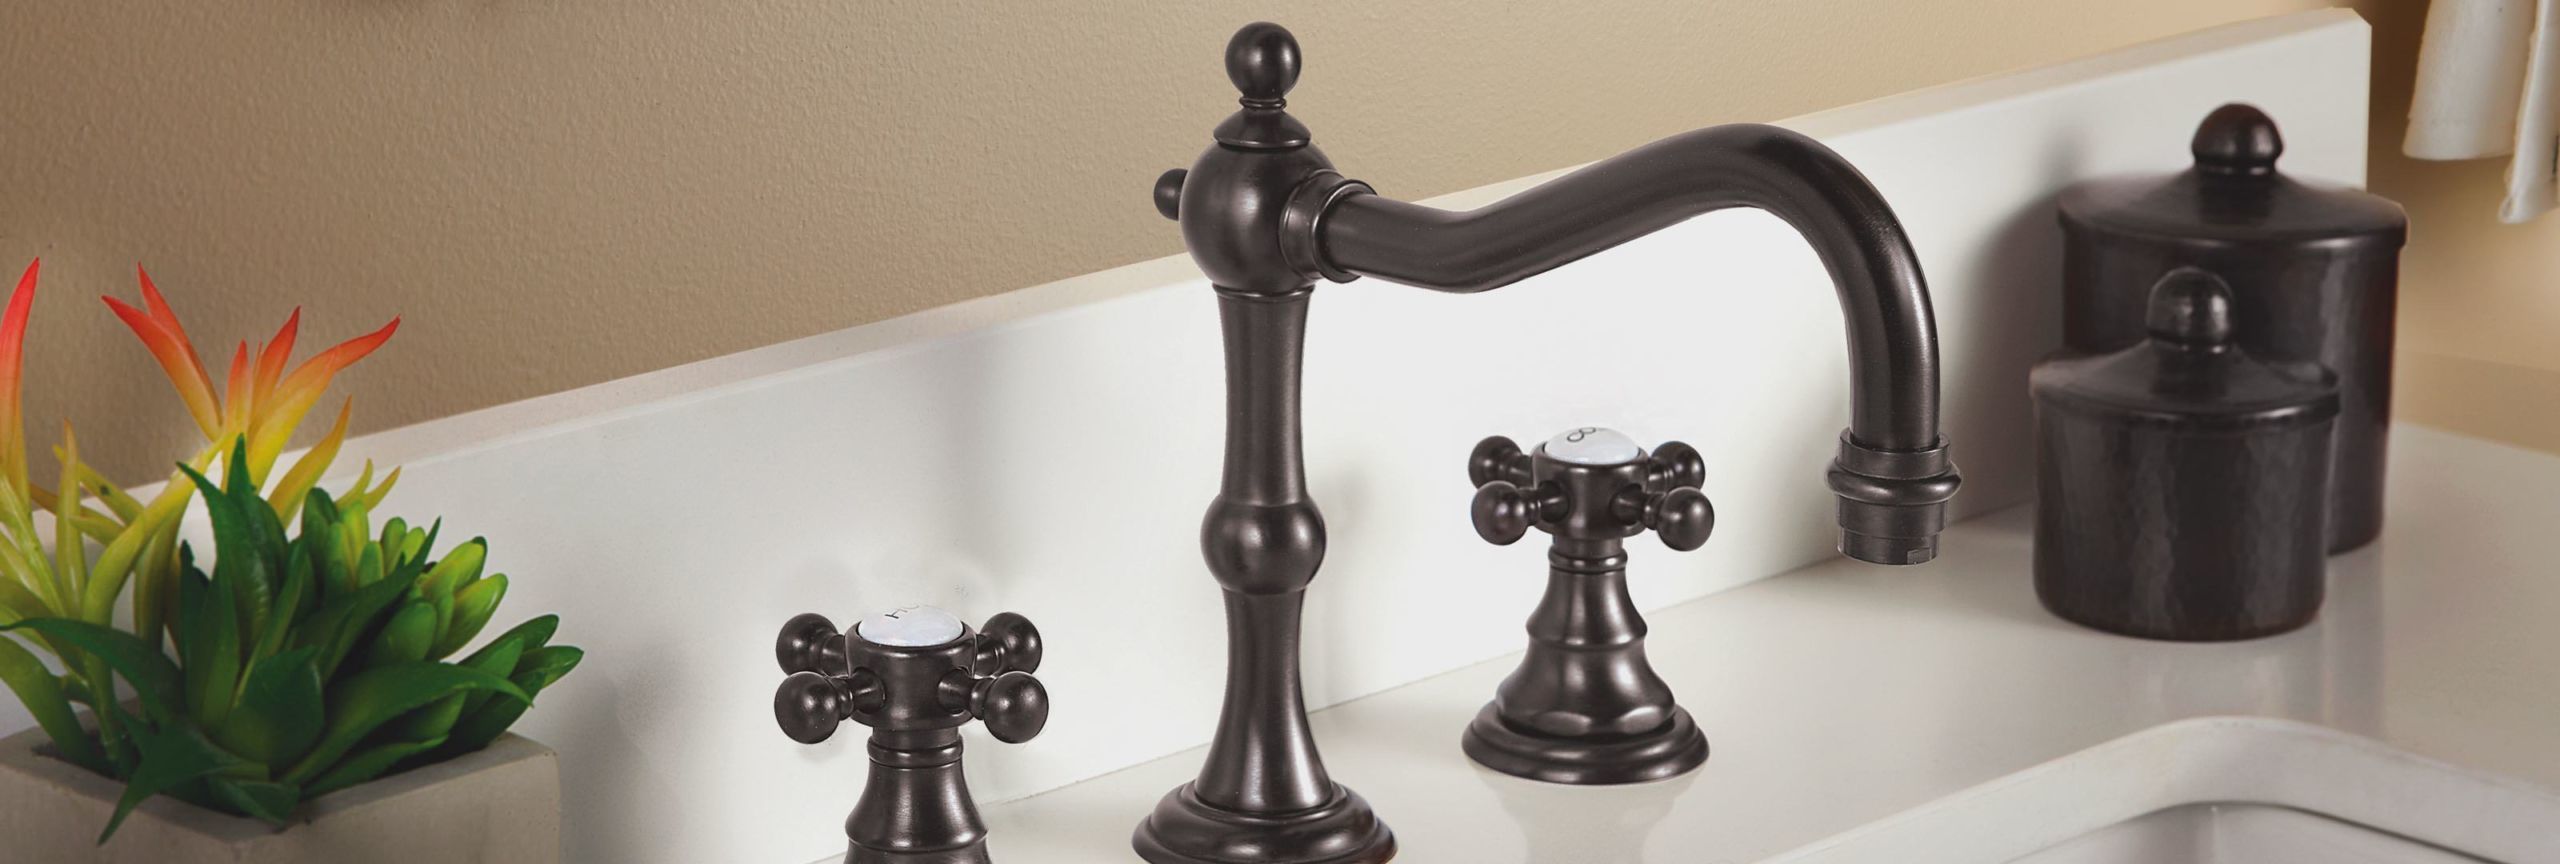 bathroom series Salinas widespread faucet in oil rubbed bronze